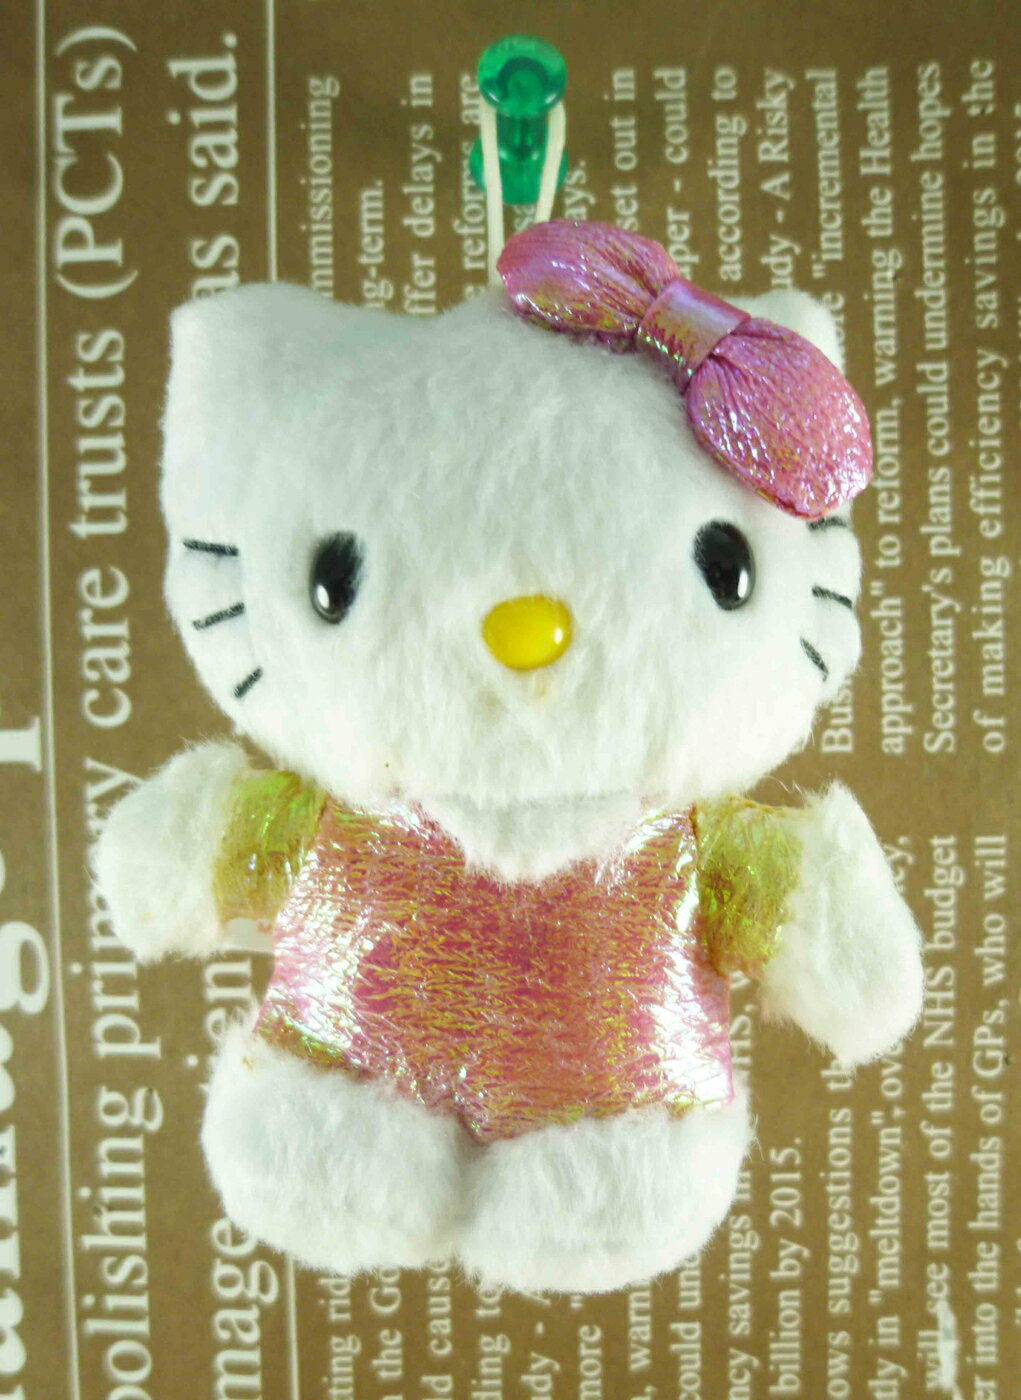 【震撼精品百貨】Hello Kitty 凱蒂貓 HELLO KITTY絨毛吊飾-亮皮粉 震撼日式精品百貨